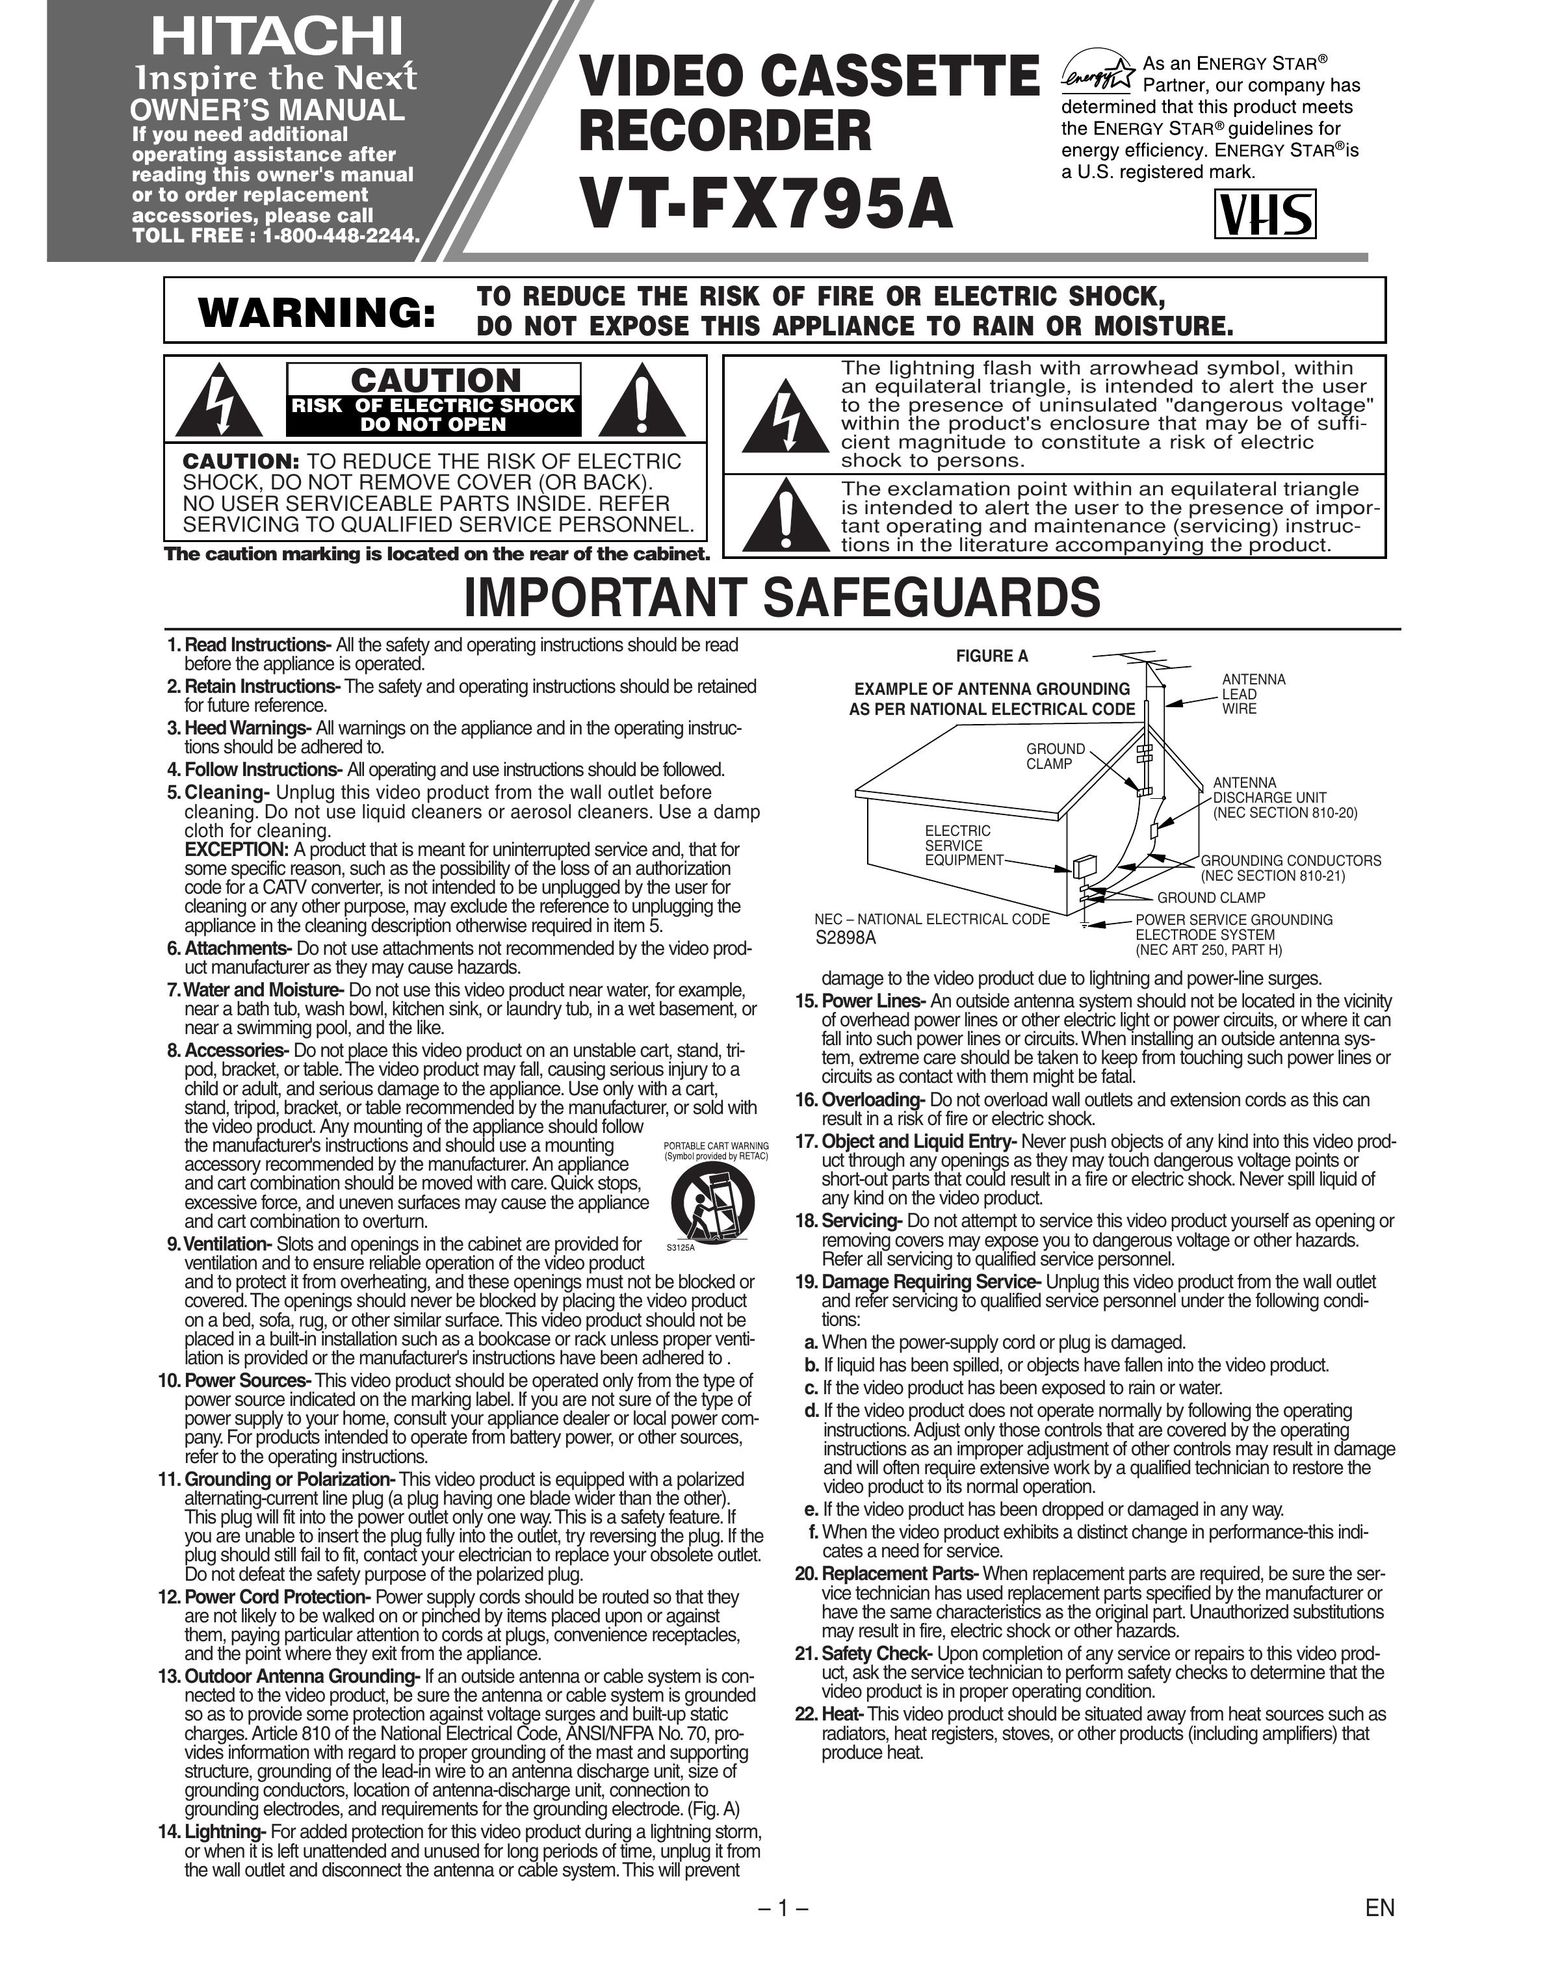 Hitachi VT-FX795A VCR User Manual